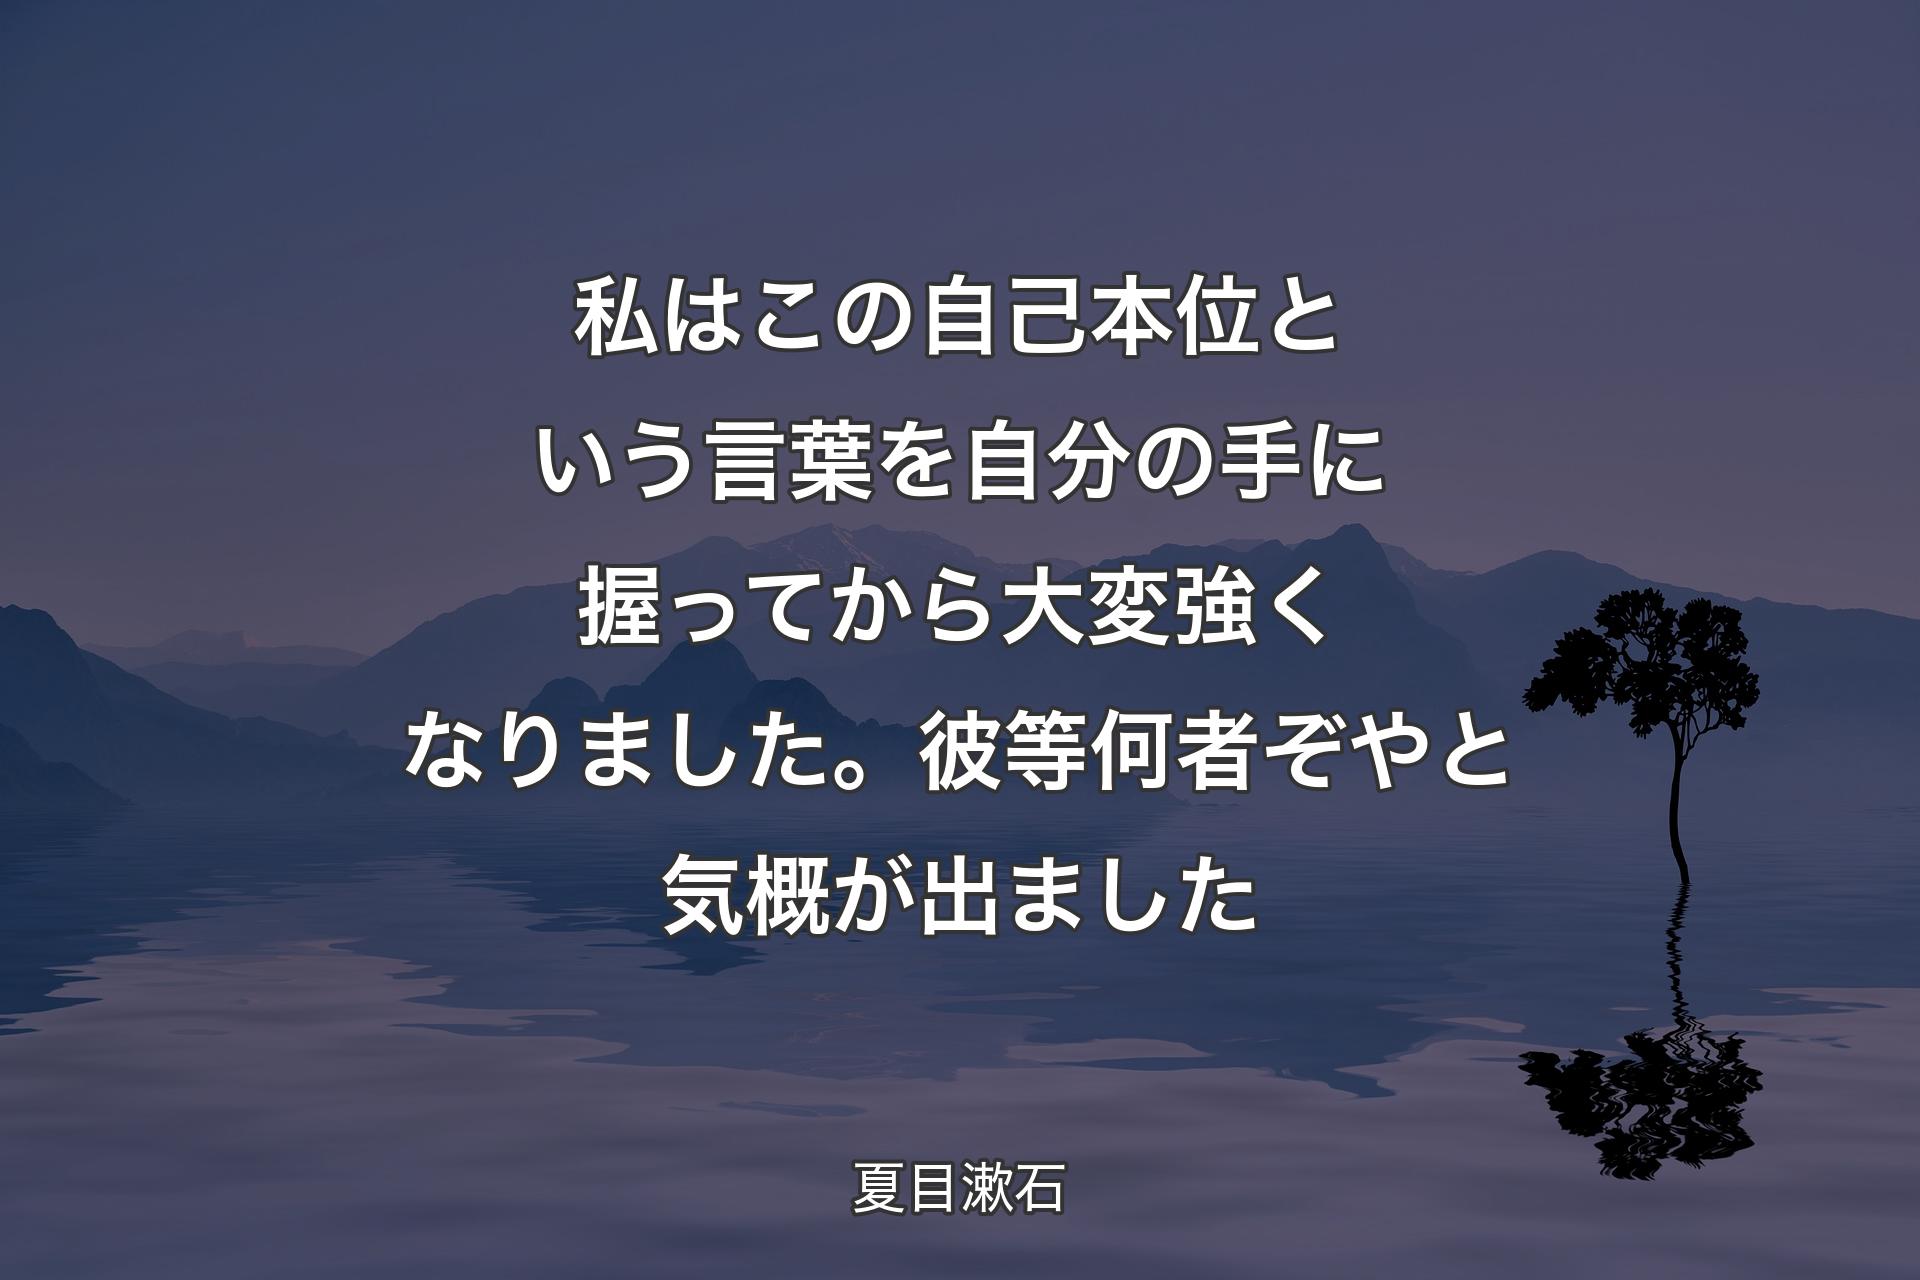 【背景4】私はこの自己本位という言葉を自分の手に握ってから大変強くなりました。彼等何者ぞやと気概が出ました - 夏目漱石